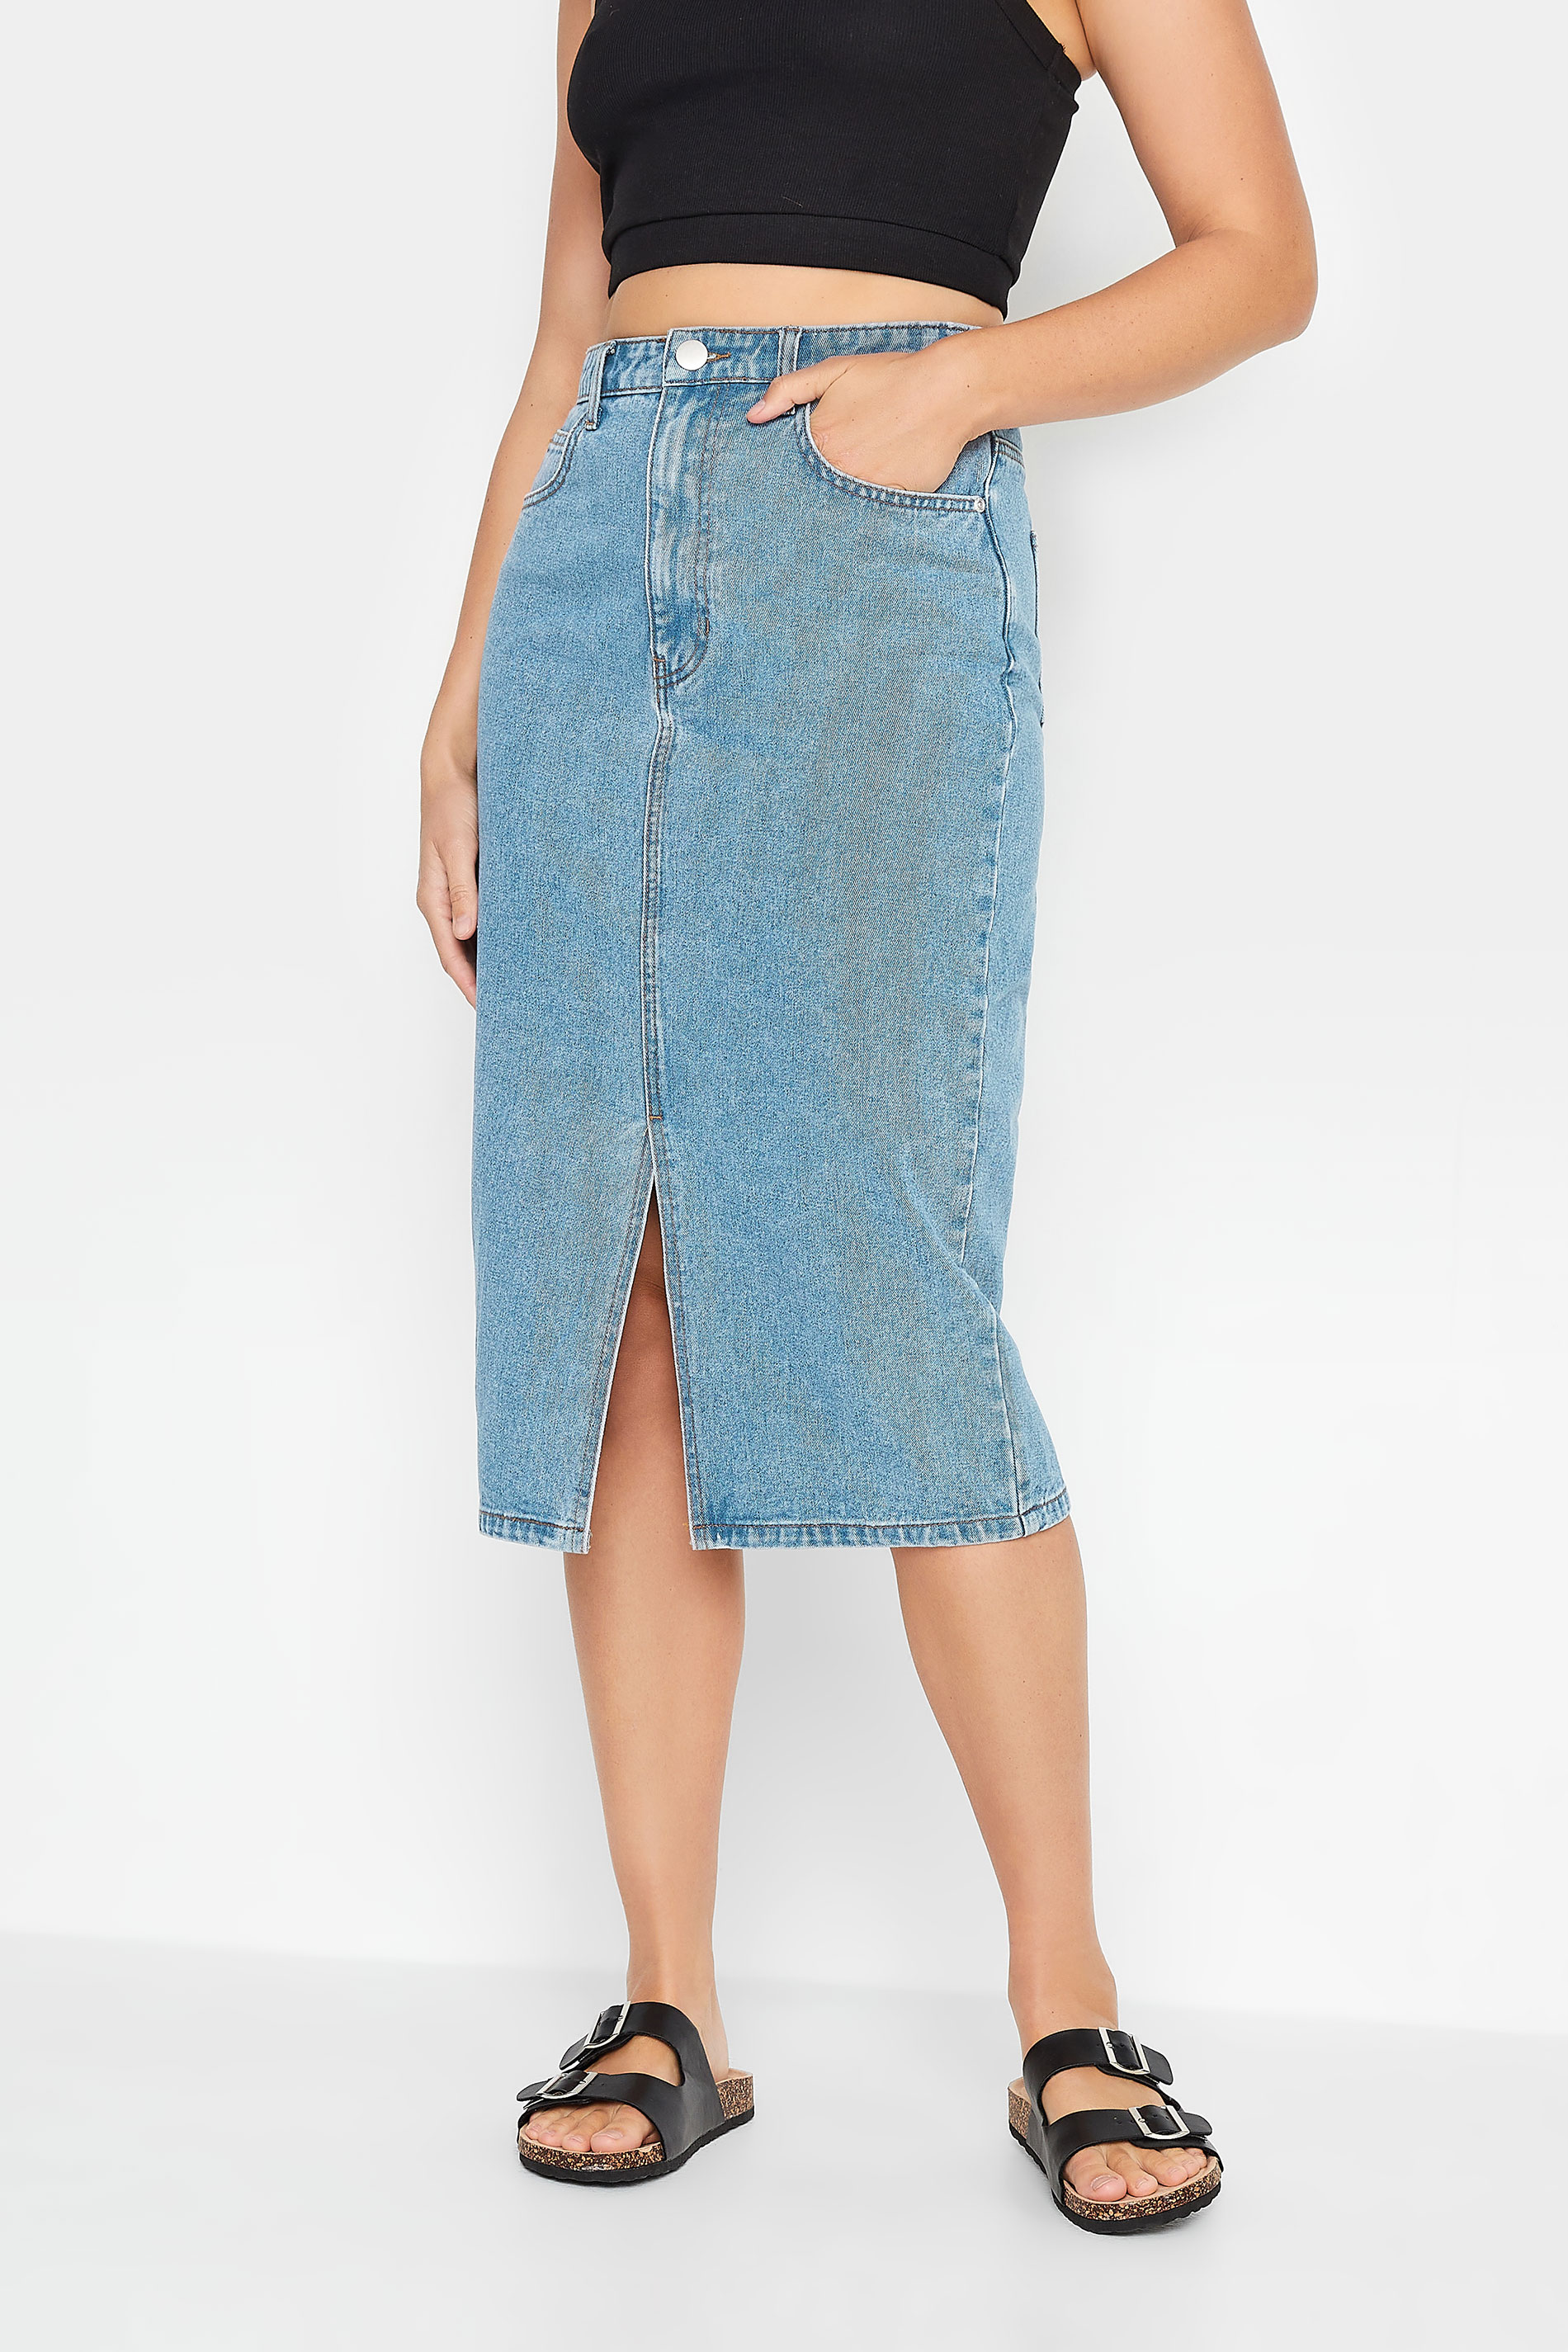 LTS Tall Blue Denim Midi Skirt | Long Tall Sally  2